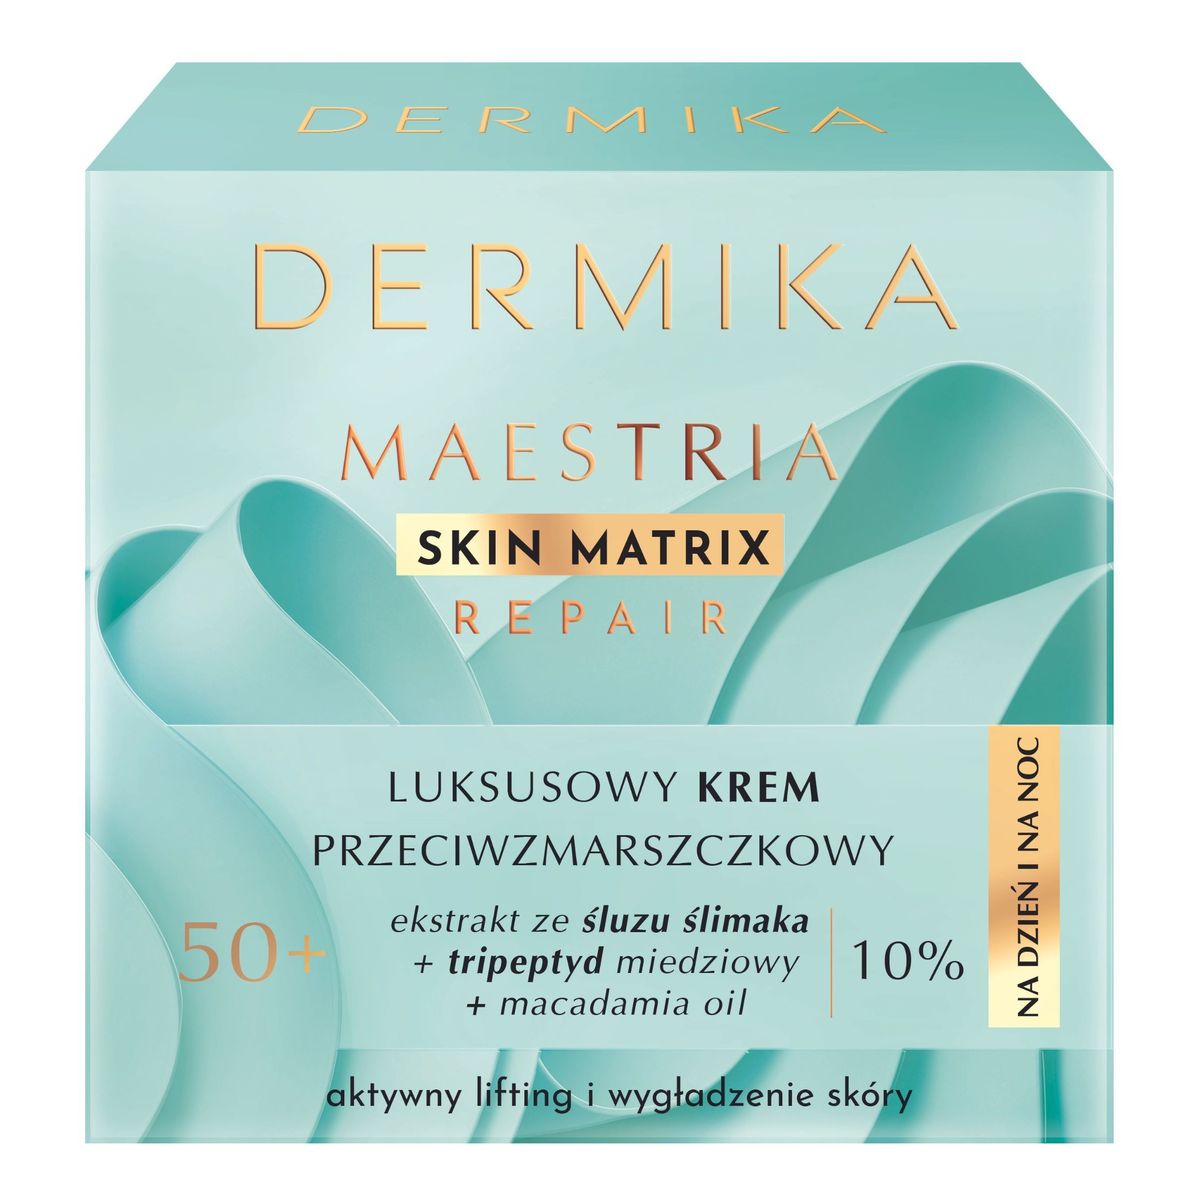 Dermika Maestria Skin Matrix Repair Luksusowy krem przeciwzmarszczkowy 50+ 50ml